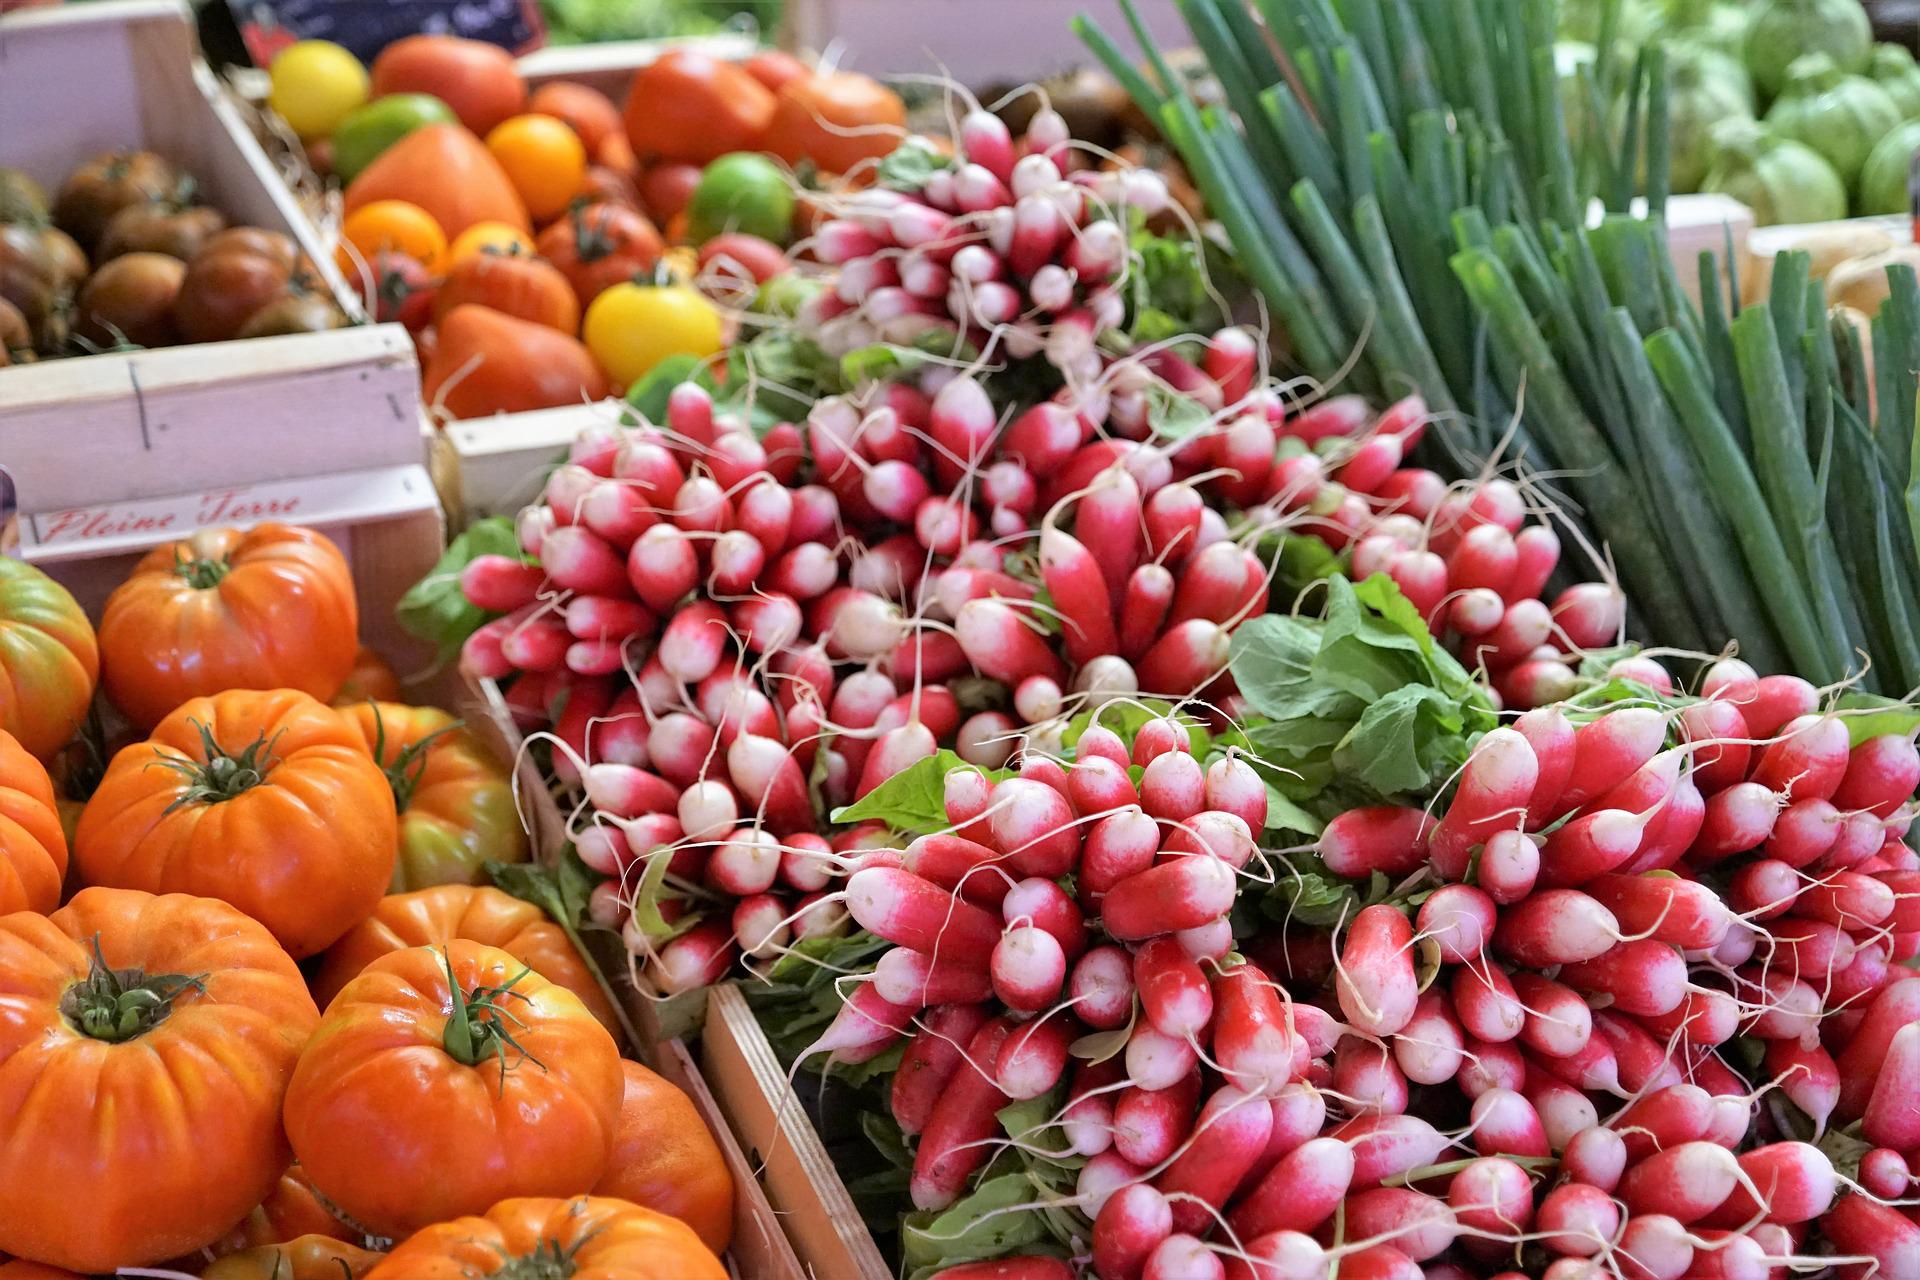 Agrobotigues i cooperatives malbaraten un 80% menys fruita i verdura que els supermercats ICTA-UAB